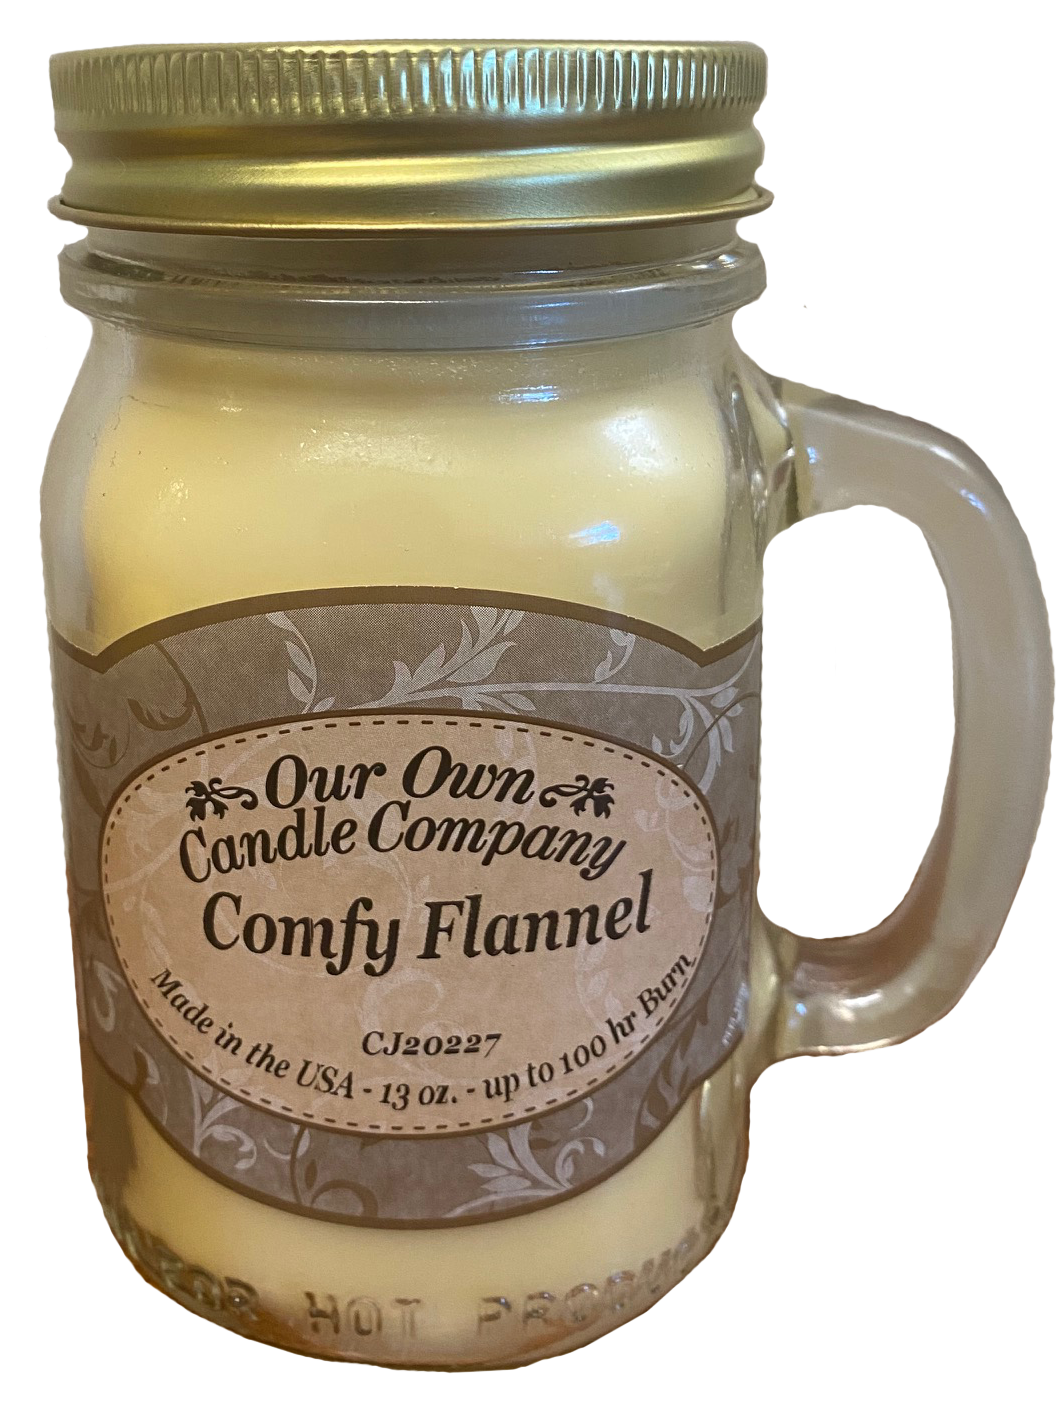 Comfy Flannel 13 oz. Mason Jar Candles